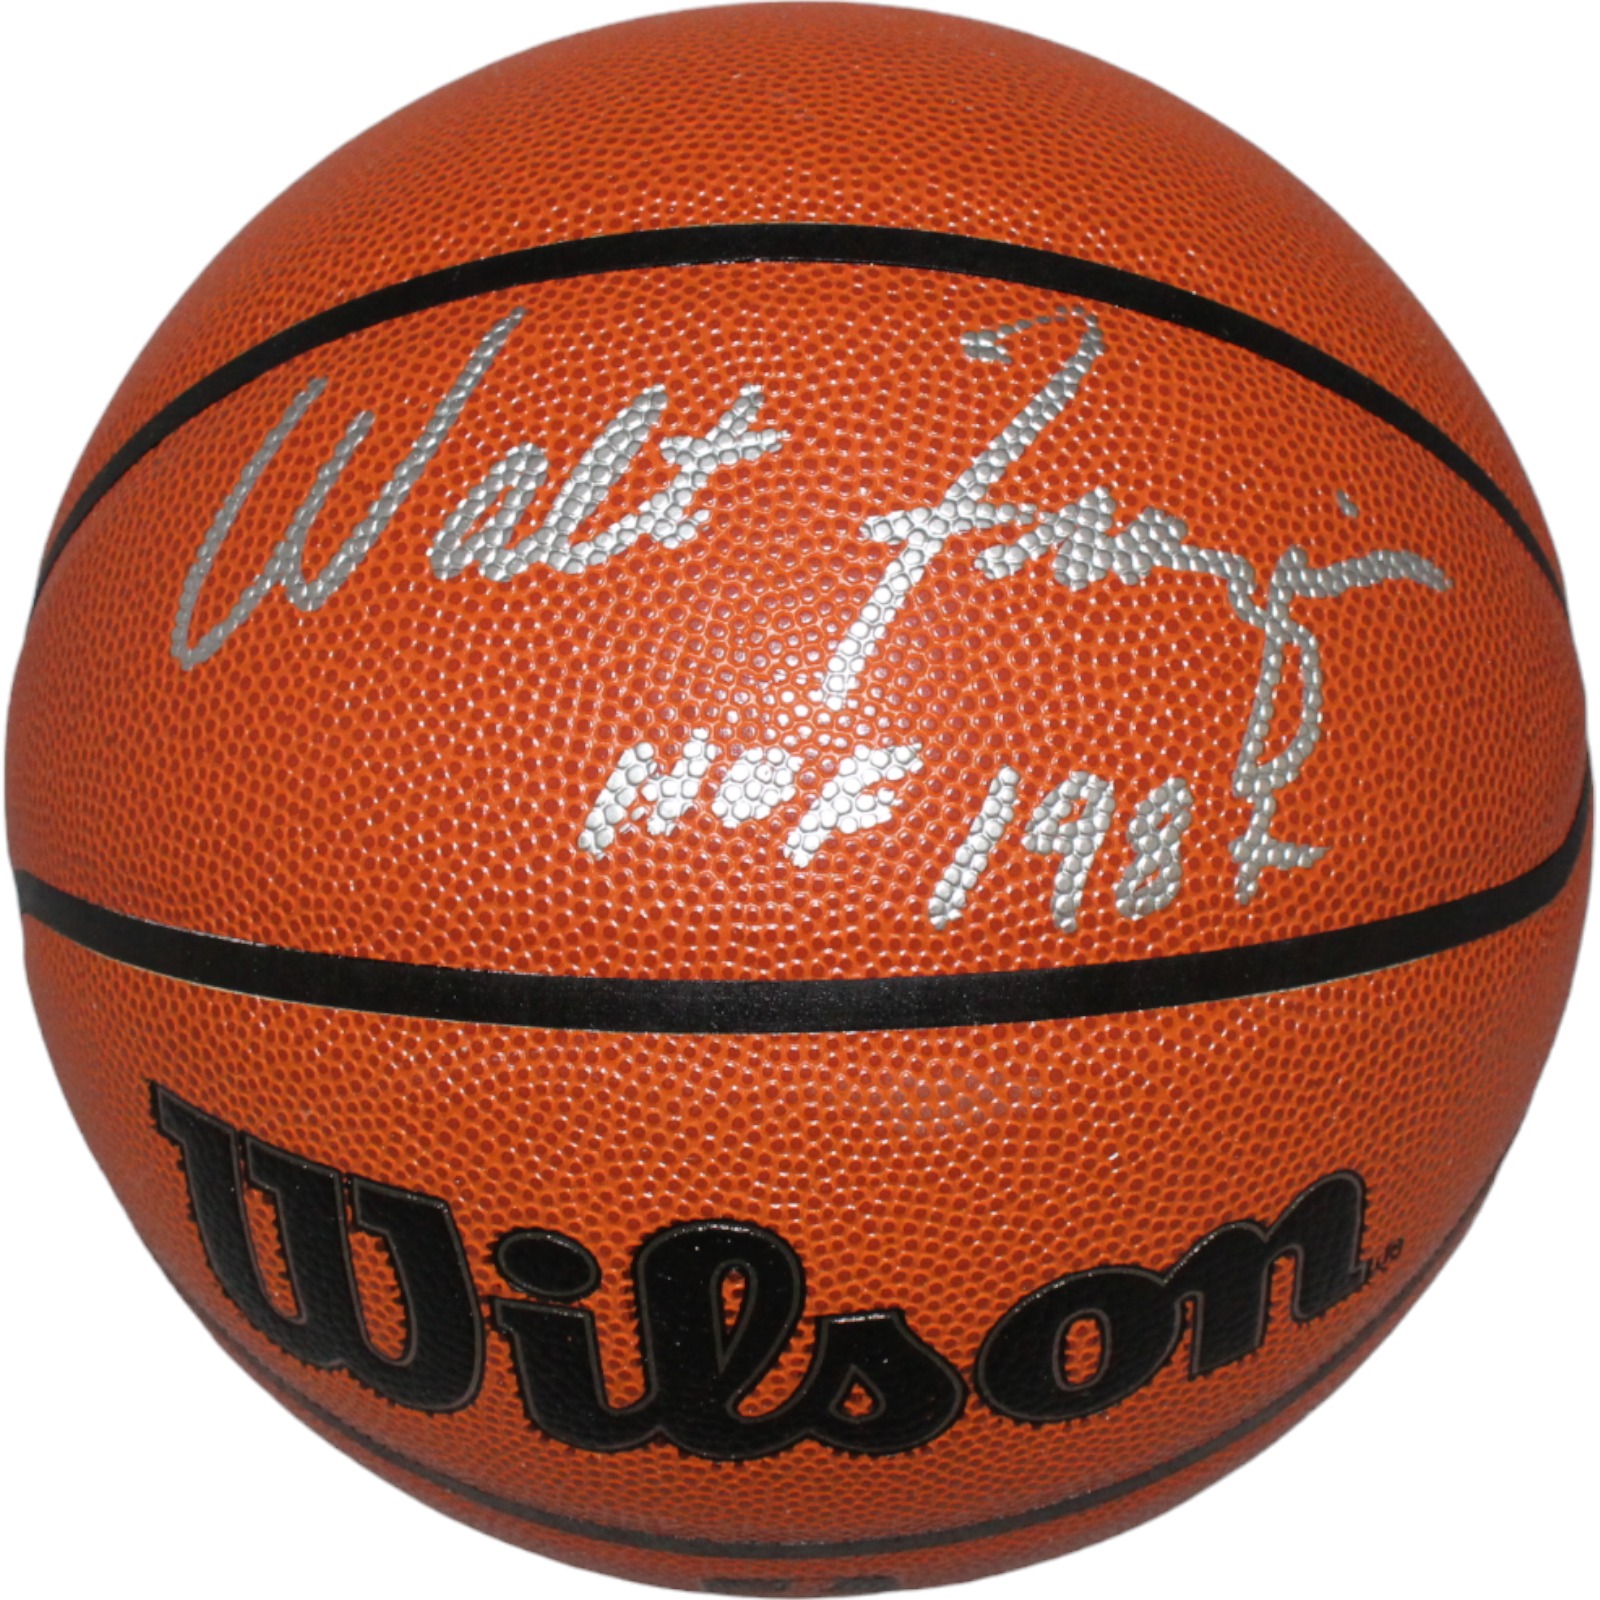 Walt Frazier Autographed/Signed New York Knicks Basketball Beckett